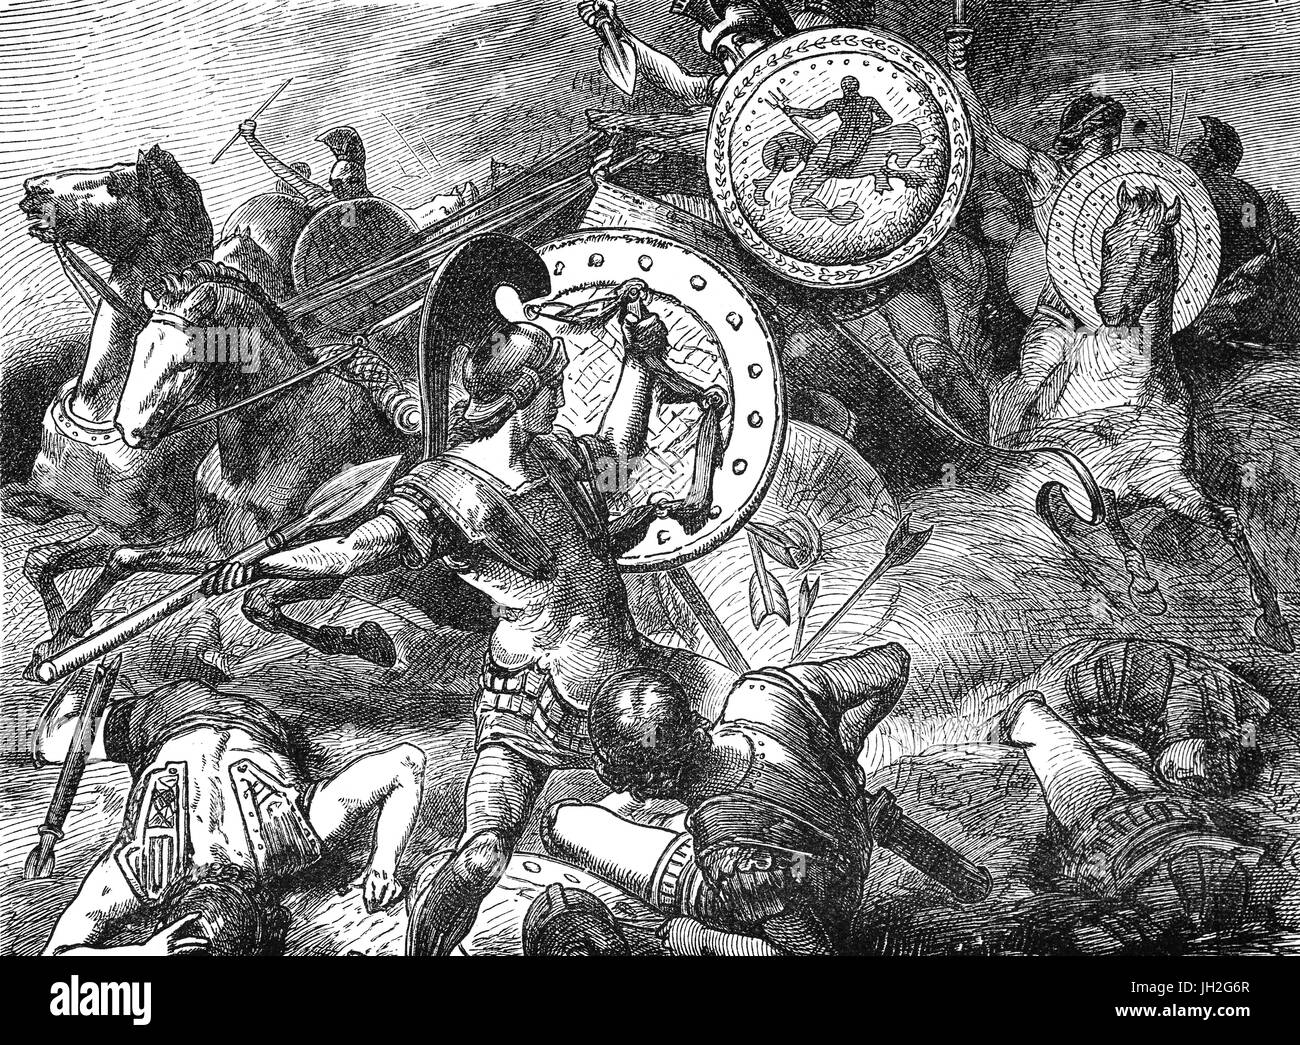 Epameinondas ein Theban general und Staatsmann des 4. Jahrhunderts v. Chr. spart Pelopidas, eine wichtige thebanischen Staatsmann und General in Griechenland während der Schlacht von Plataiai 371 v. Chr.. Stockfoto